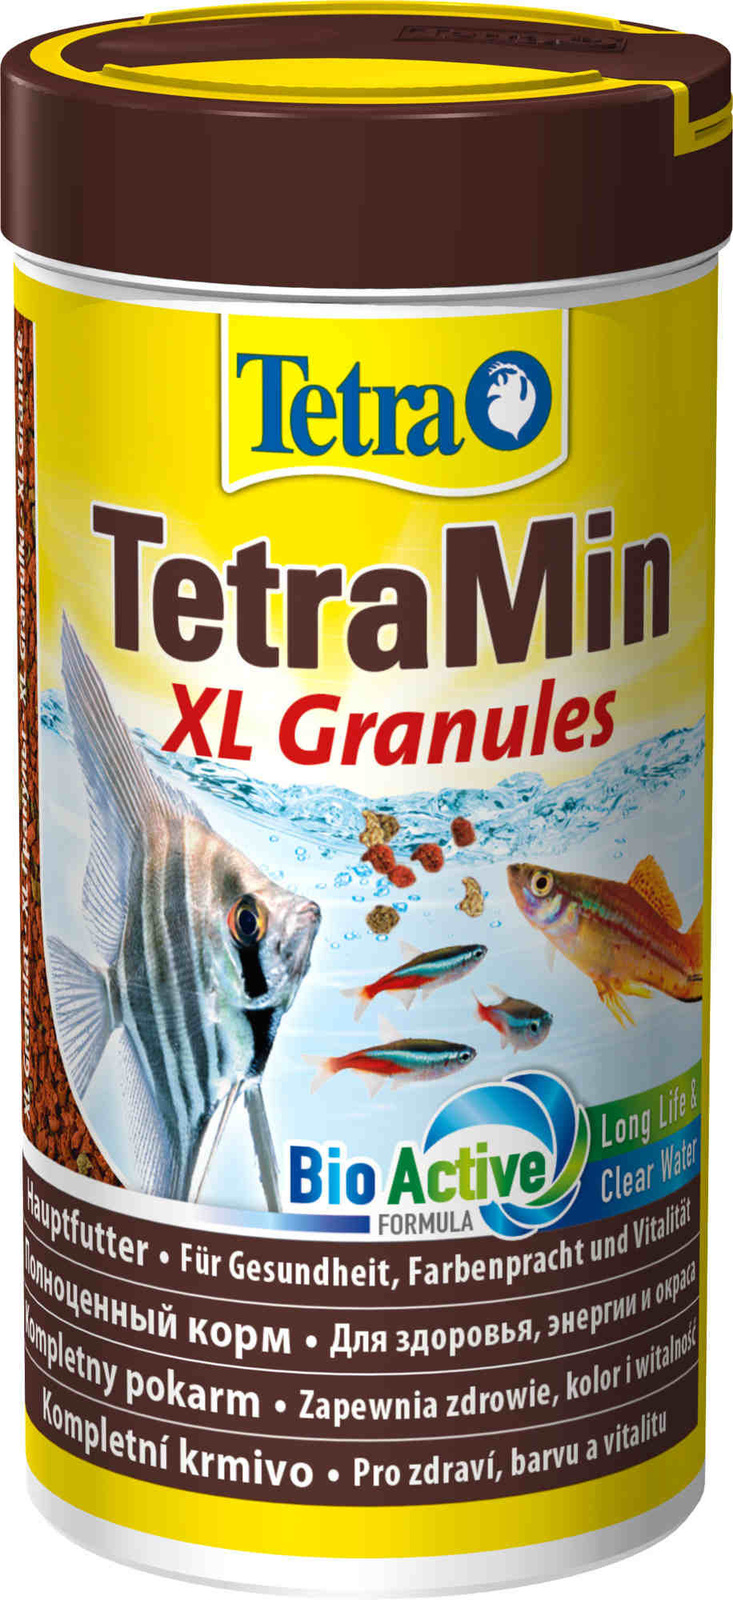 Tetra (корма) Tetra (корма) корм для всех видов крупных рыб, крупные гранулы (82 г) tetra корма tetra корма корм для всех видов мелких рыб четыре вида корма 65 г